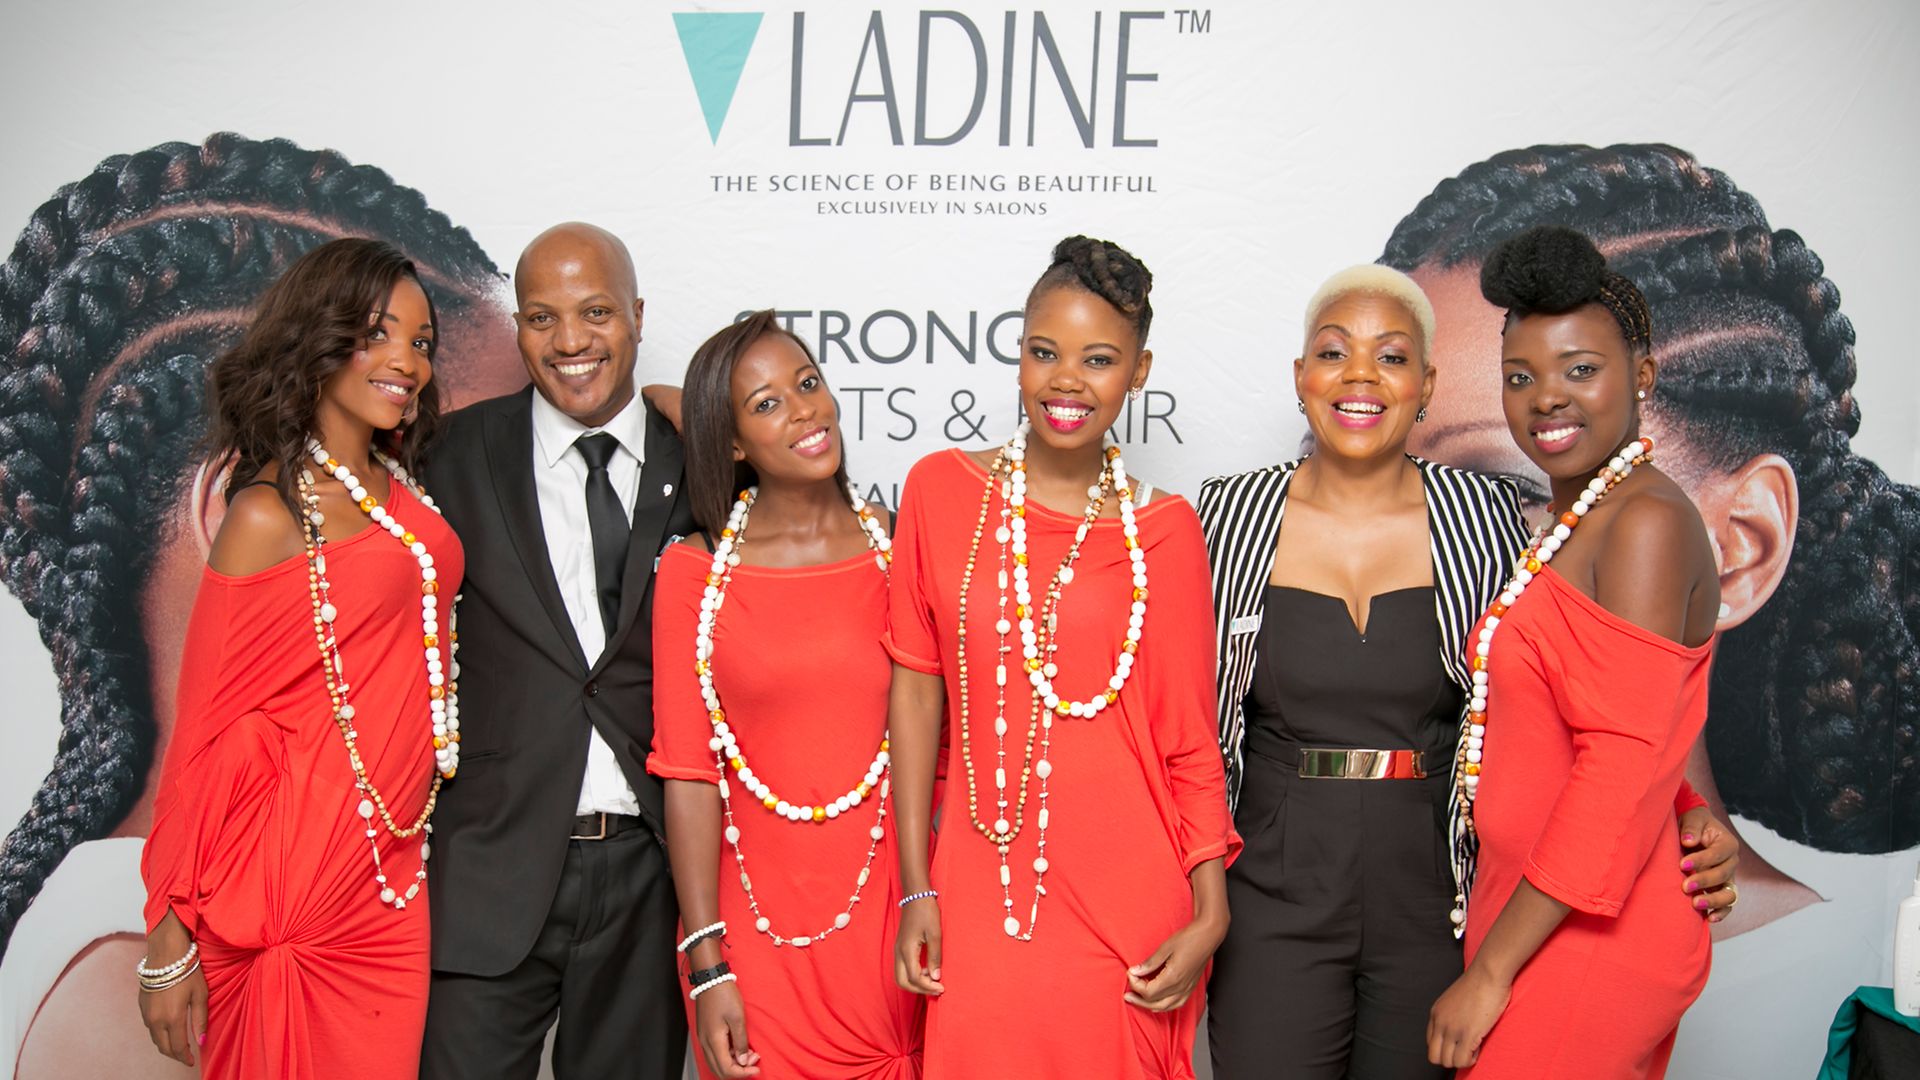 Mdu Shongwe and Lindiwe Radebe with models